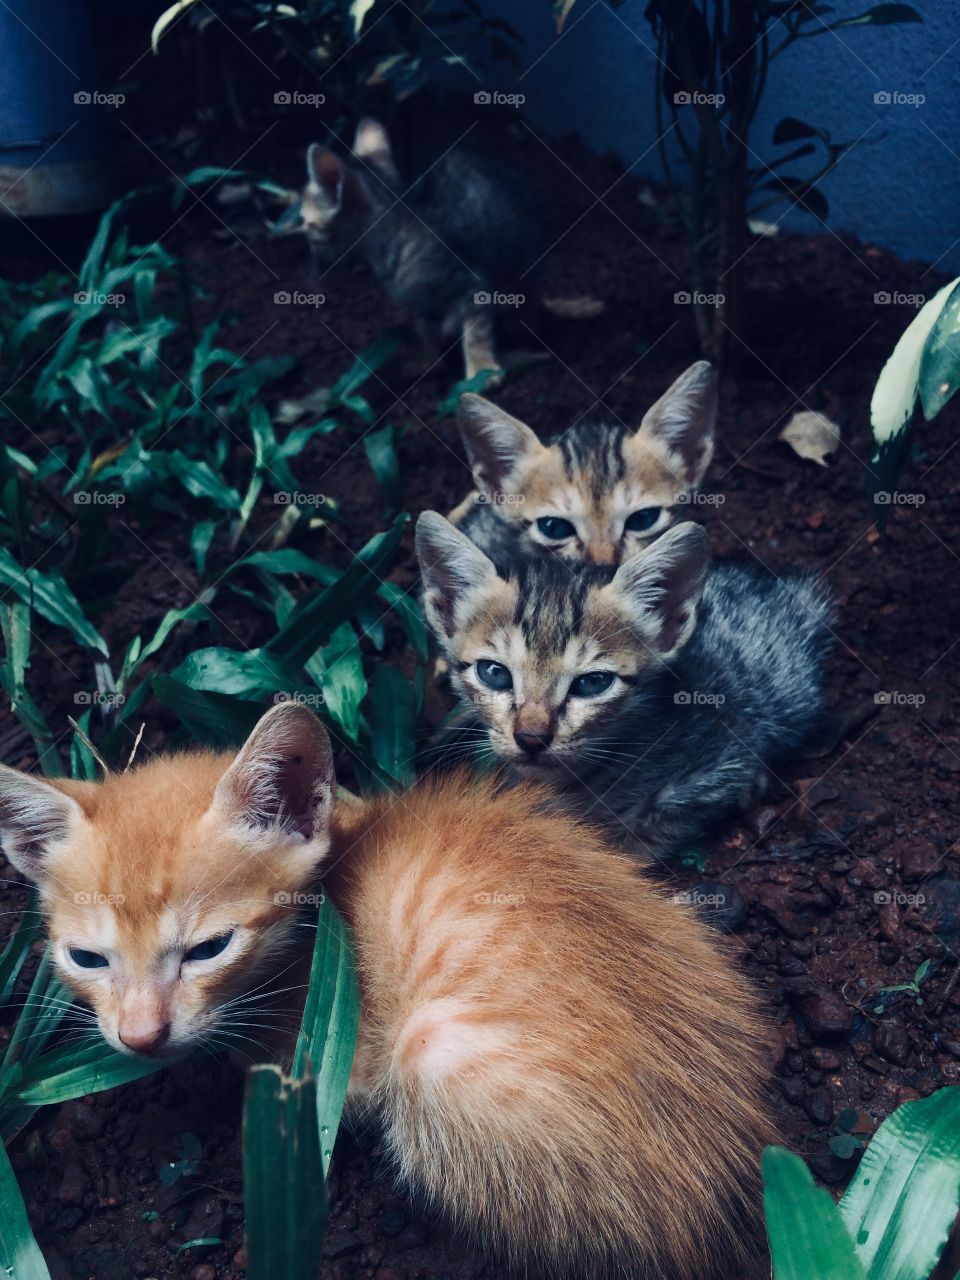 Cute kittens in Goa 2018